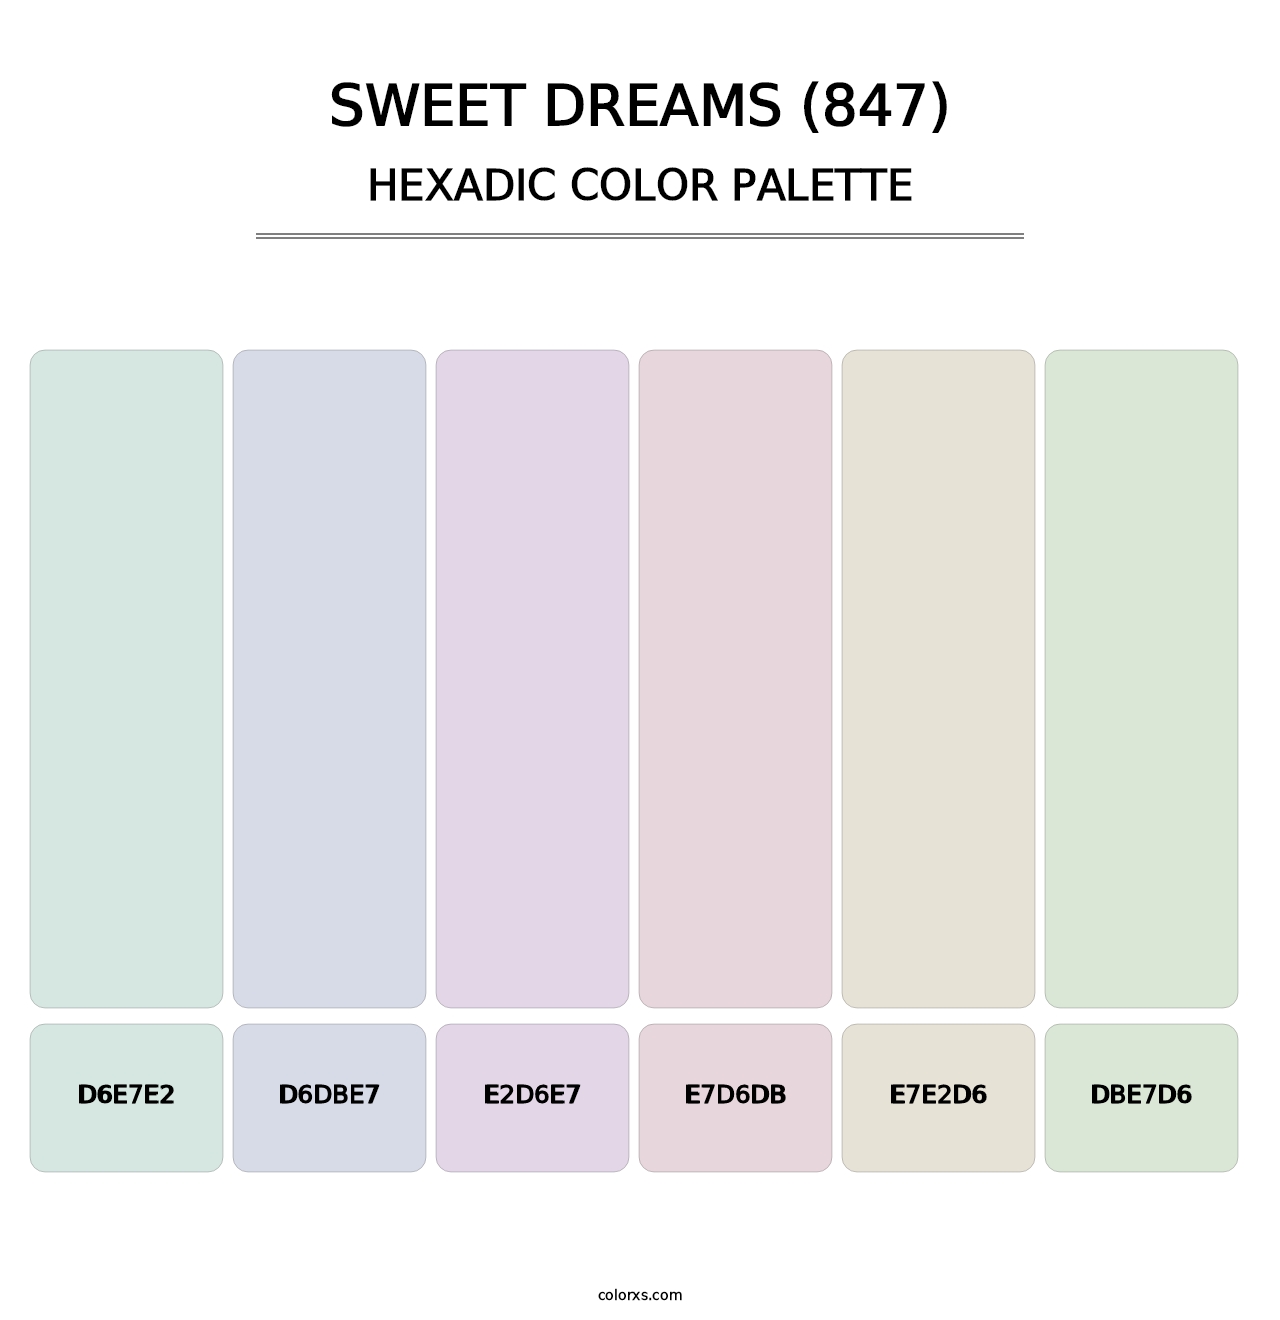 Sweet Dreams (847) - Hexadic Color Palette